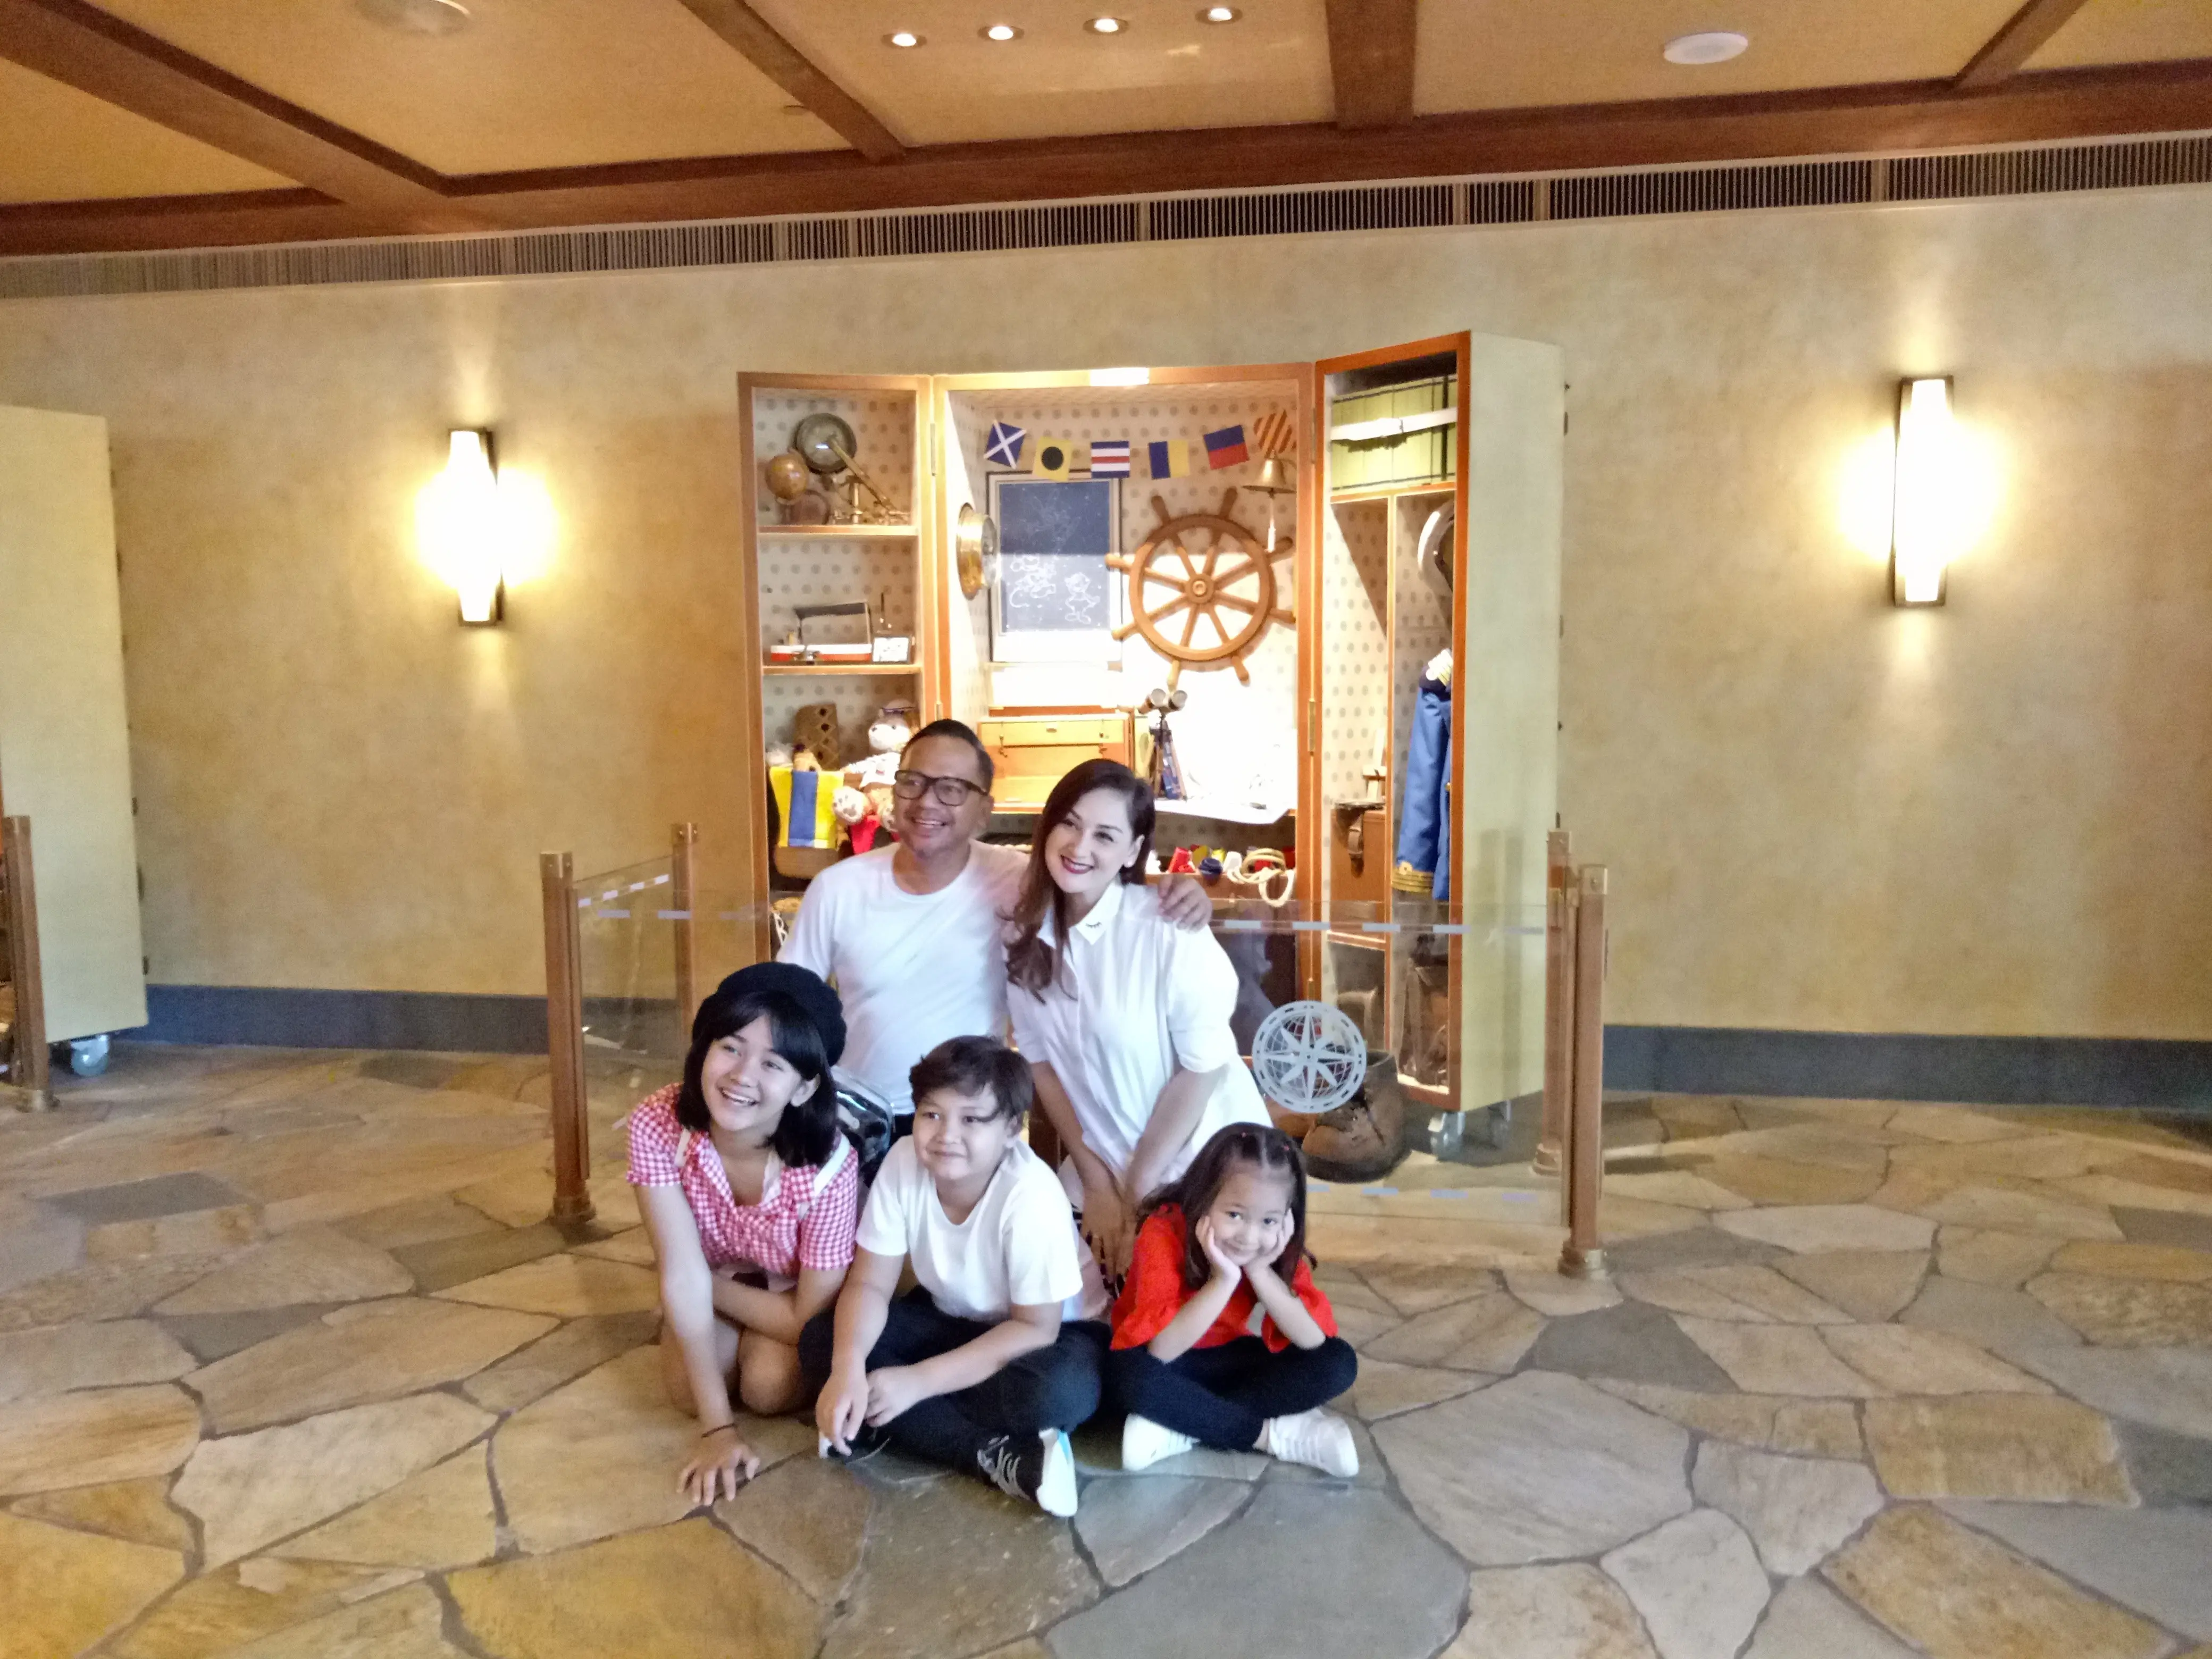 Mona Ratuliu bersama keluarga di Disney Explorers Lodges.